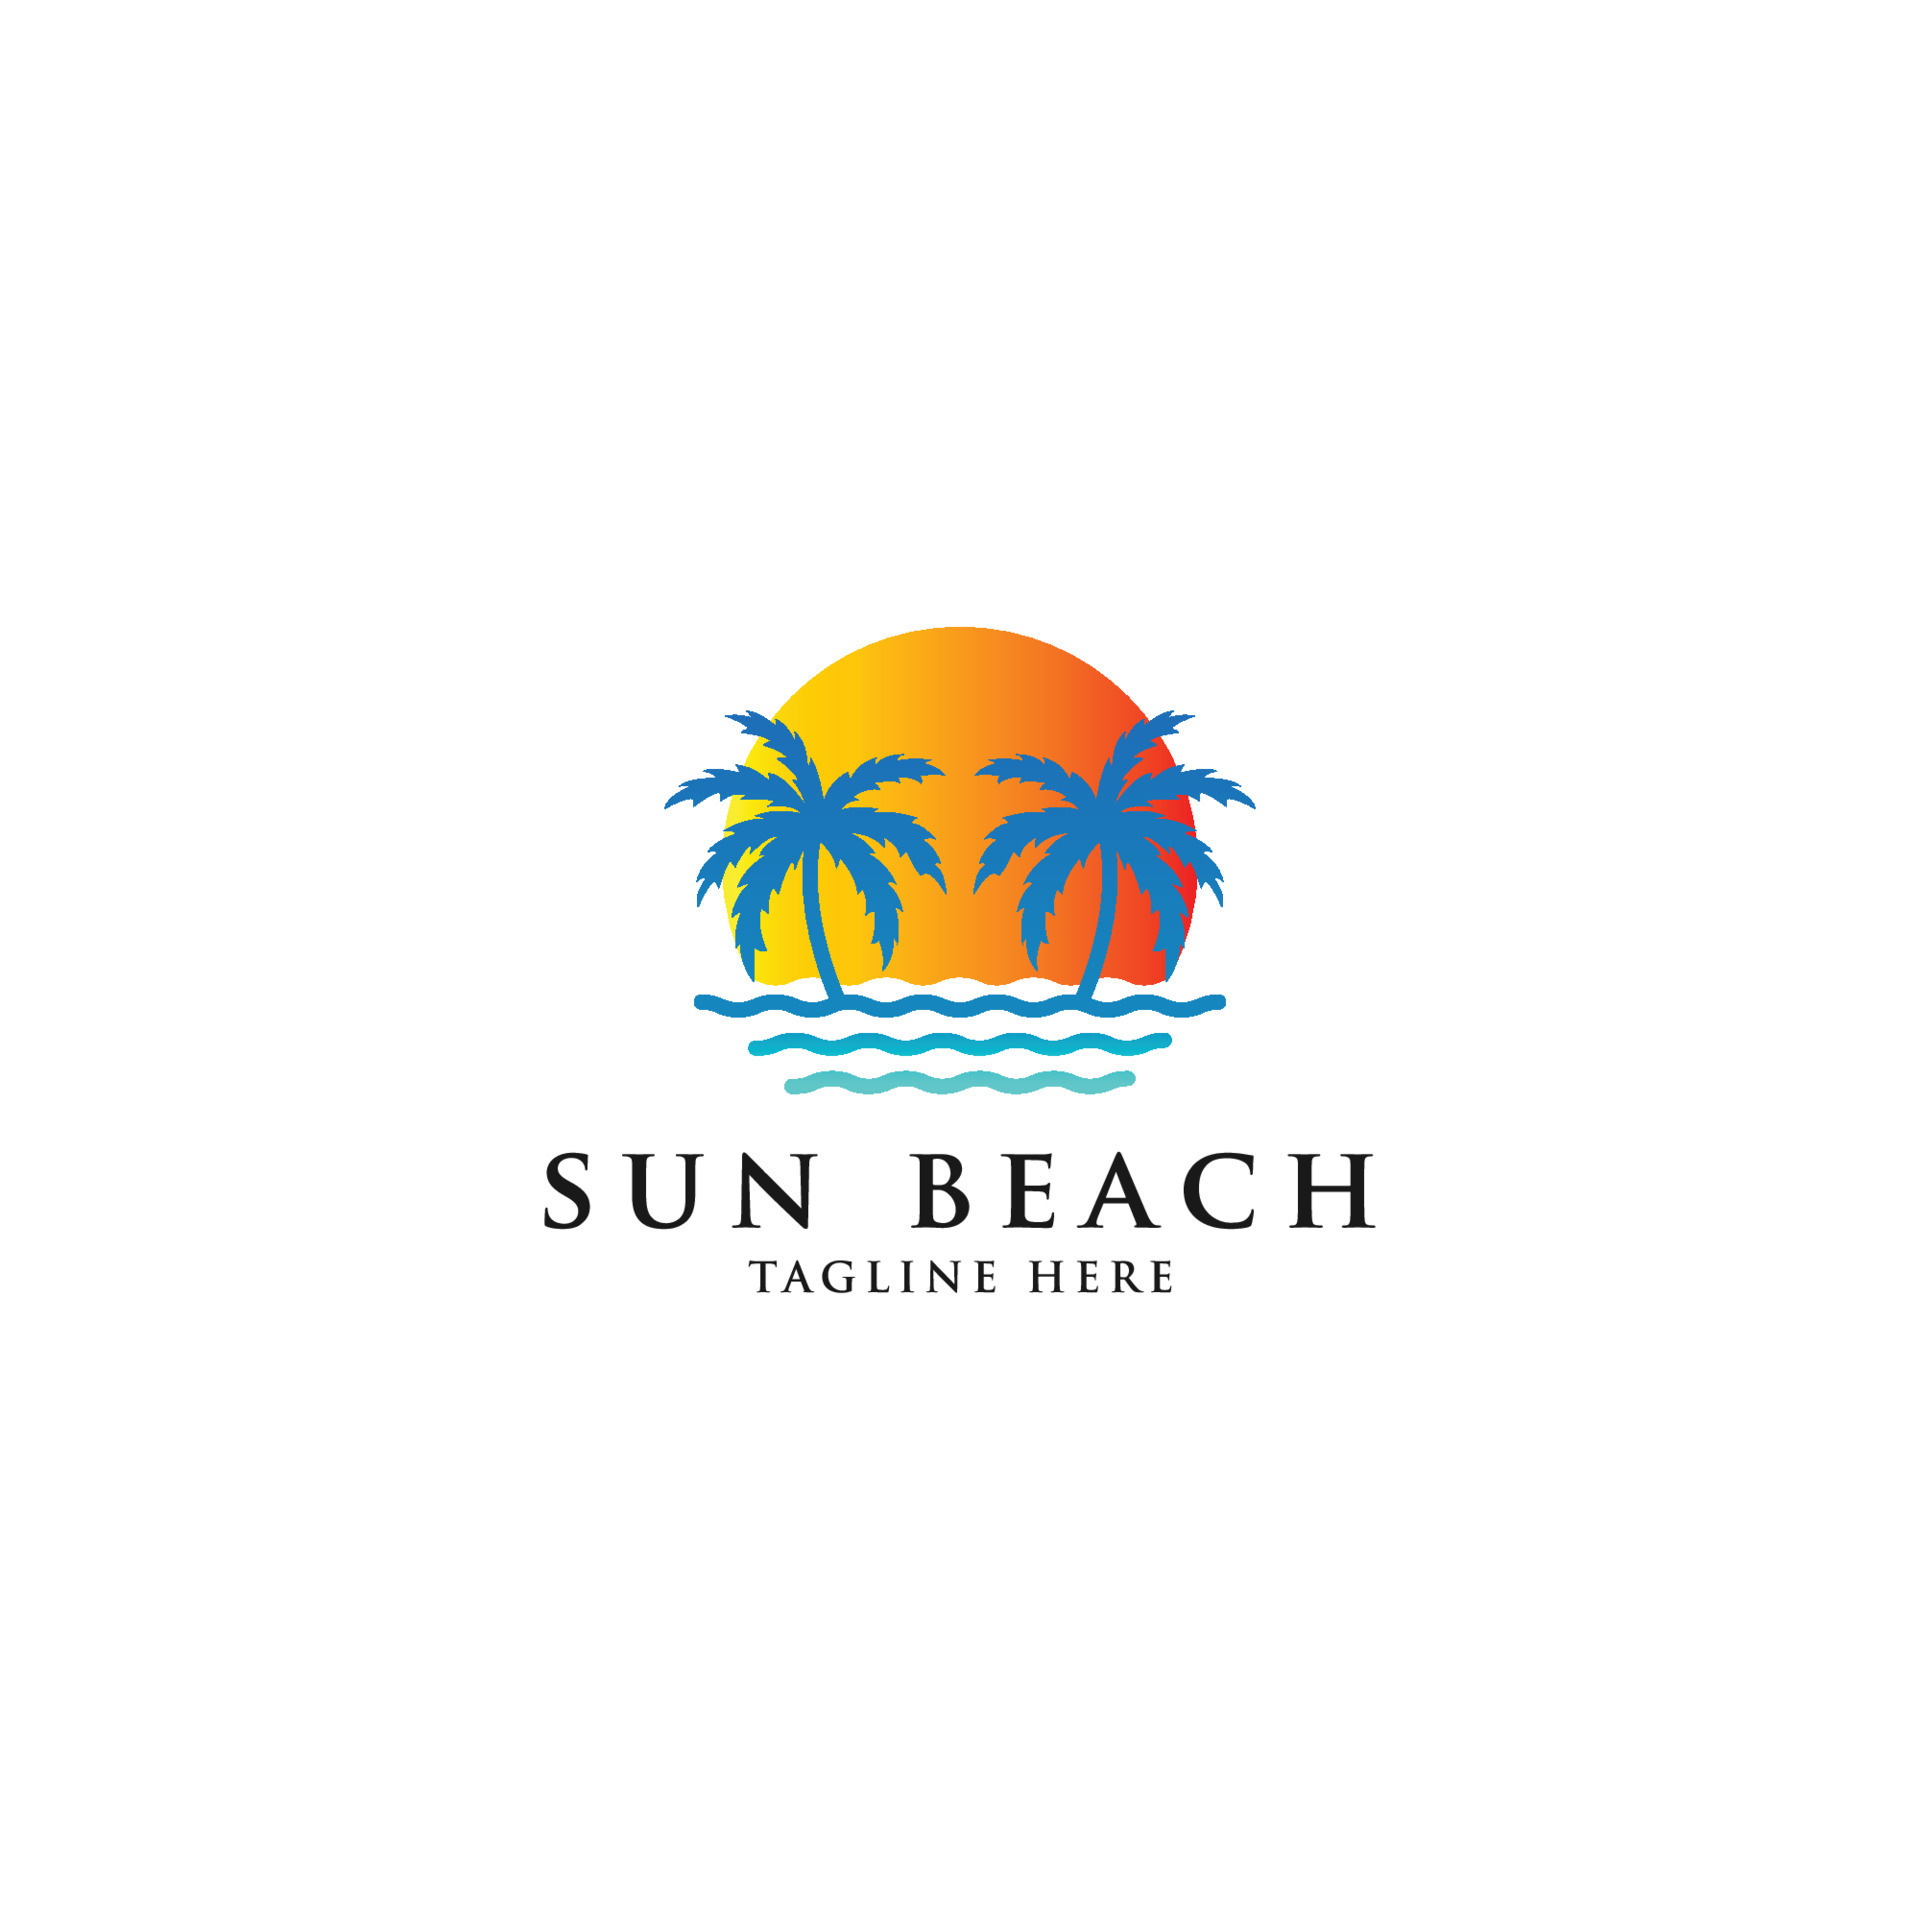 Beach And Island Logo Icon Design Template. - Vector 9097498 Vector Art ...